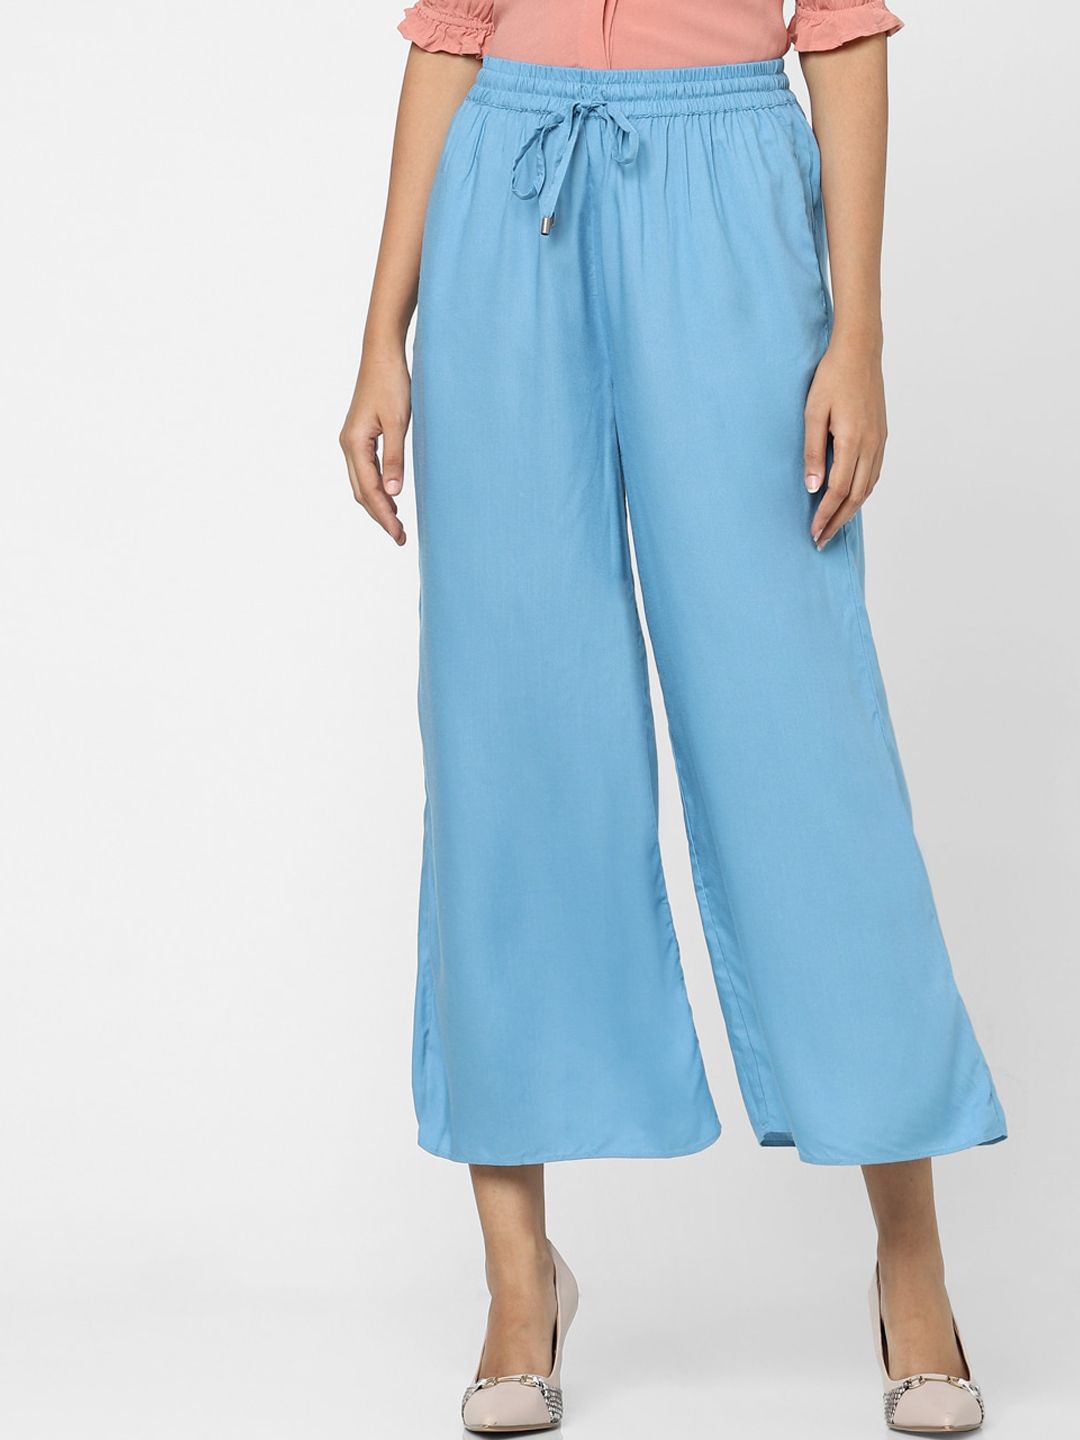 Vero Moda Women Blue Culottes Trousers Price in India